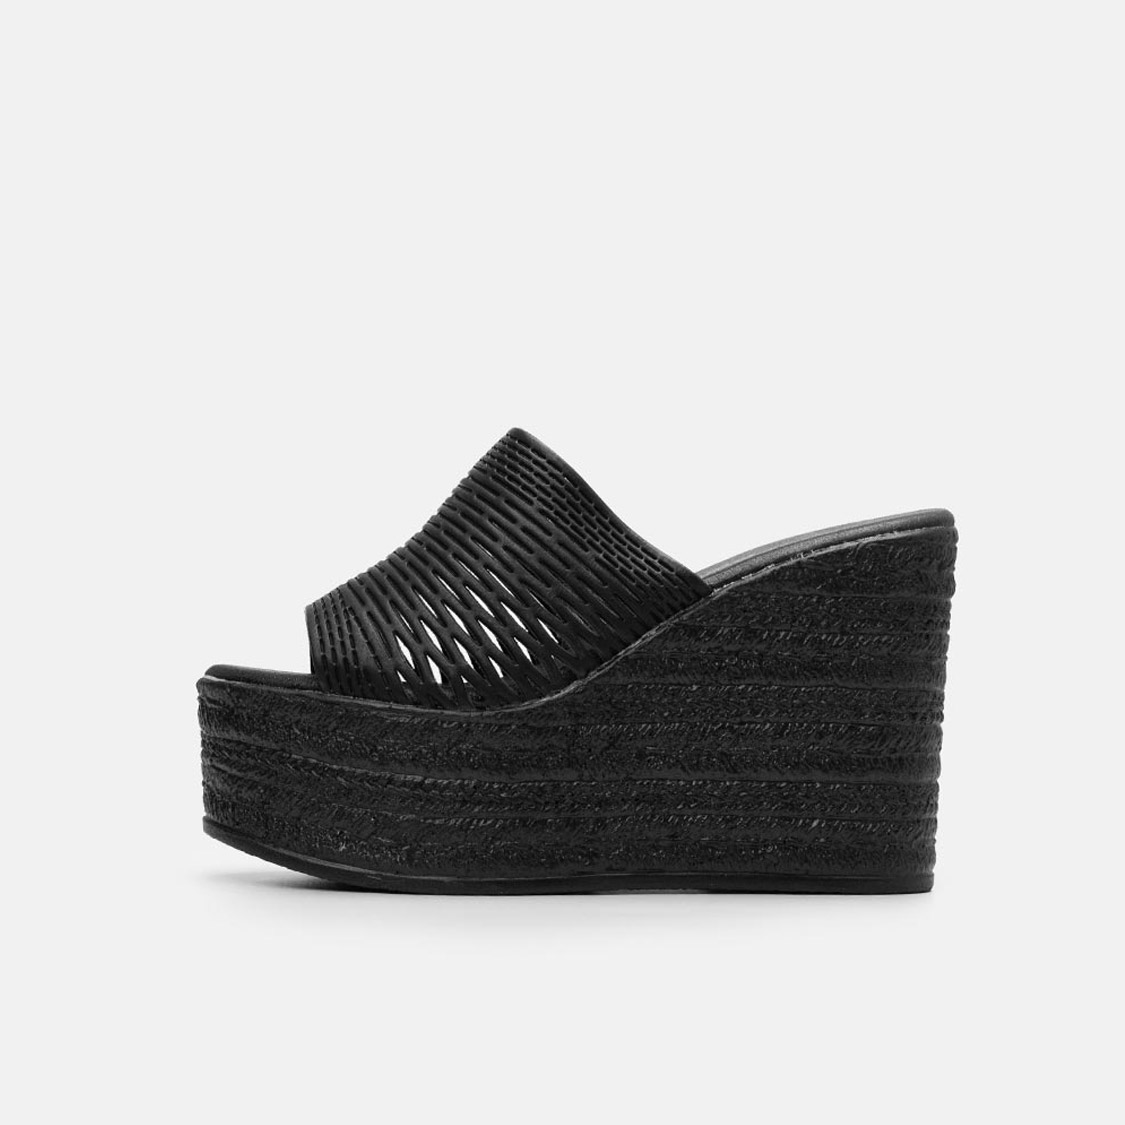 Γυναικείες πλατφόρμες με ανάγλυφο σχεδιασμό Μαύρο | Παπούτσια | Παντόφλες | Sales | Bngshoes.gr